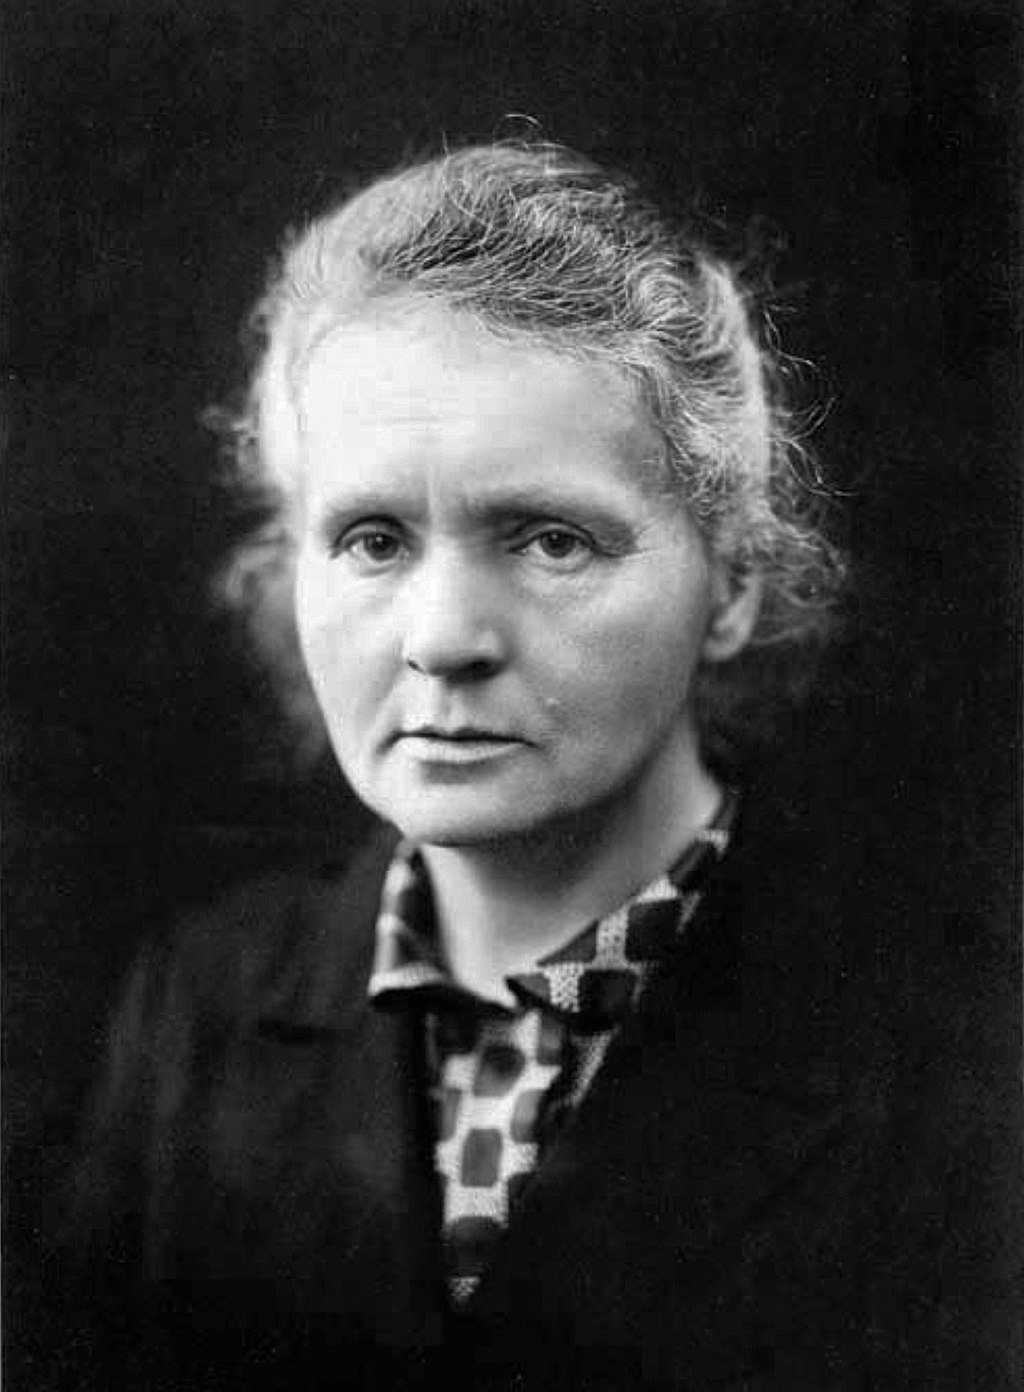 Marie Curie Ces personnages historiques qui ont d'abord été traités de fous mais qui ont toujours eu raison